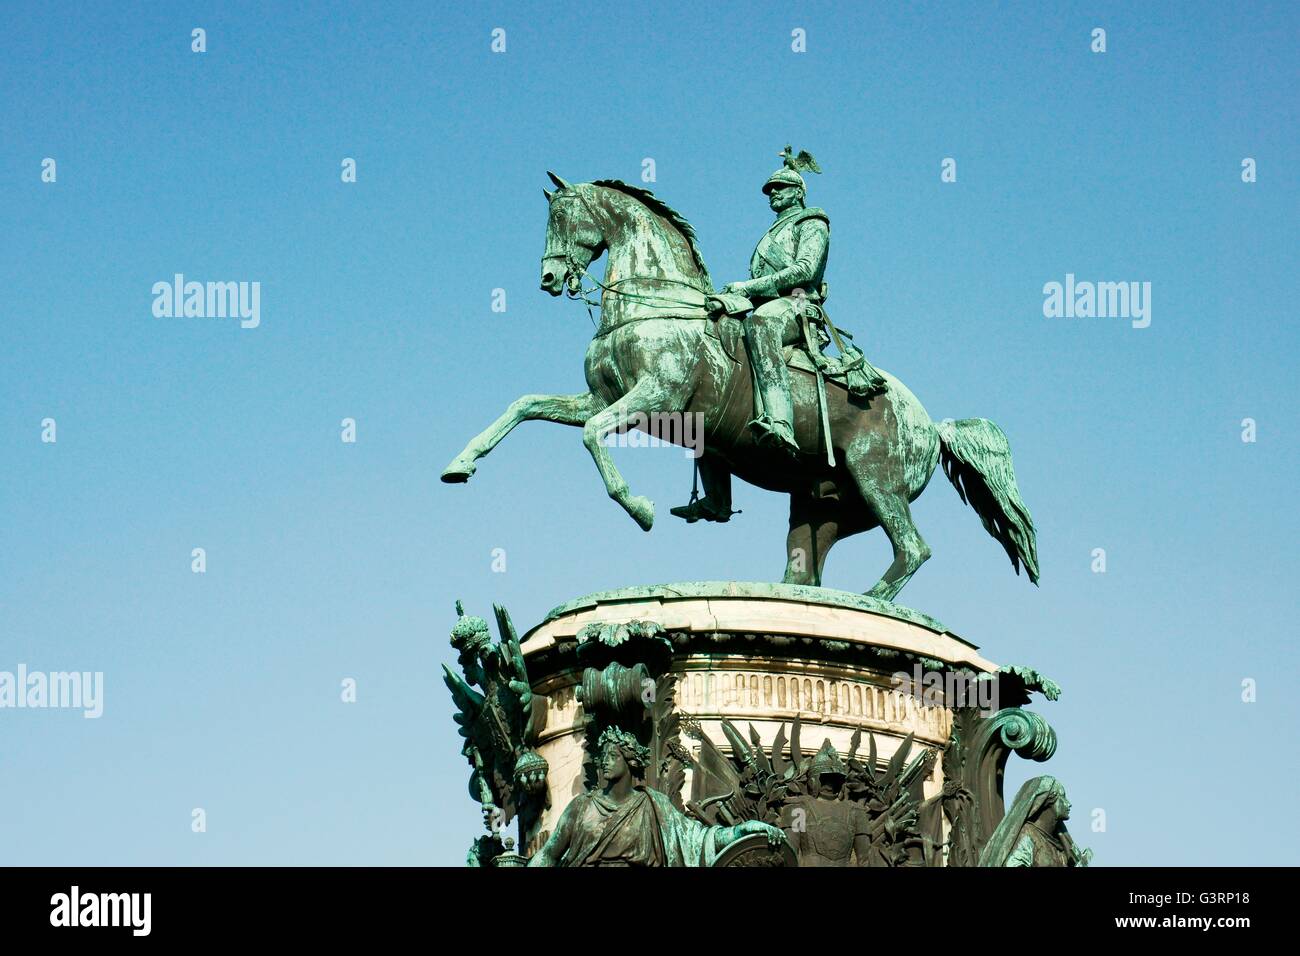 San Pietroburgo Russia. statua equestre in bronzo di Nicola i in st. Isaac's Square di fronte st. isaac Foto Stock